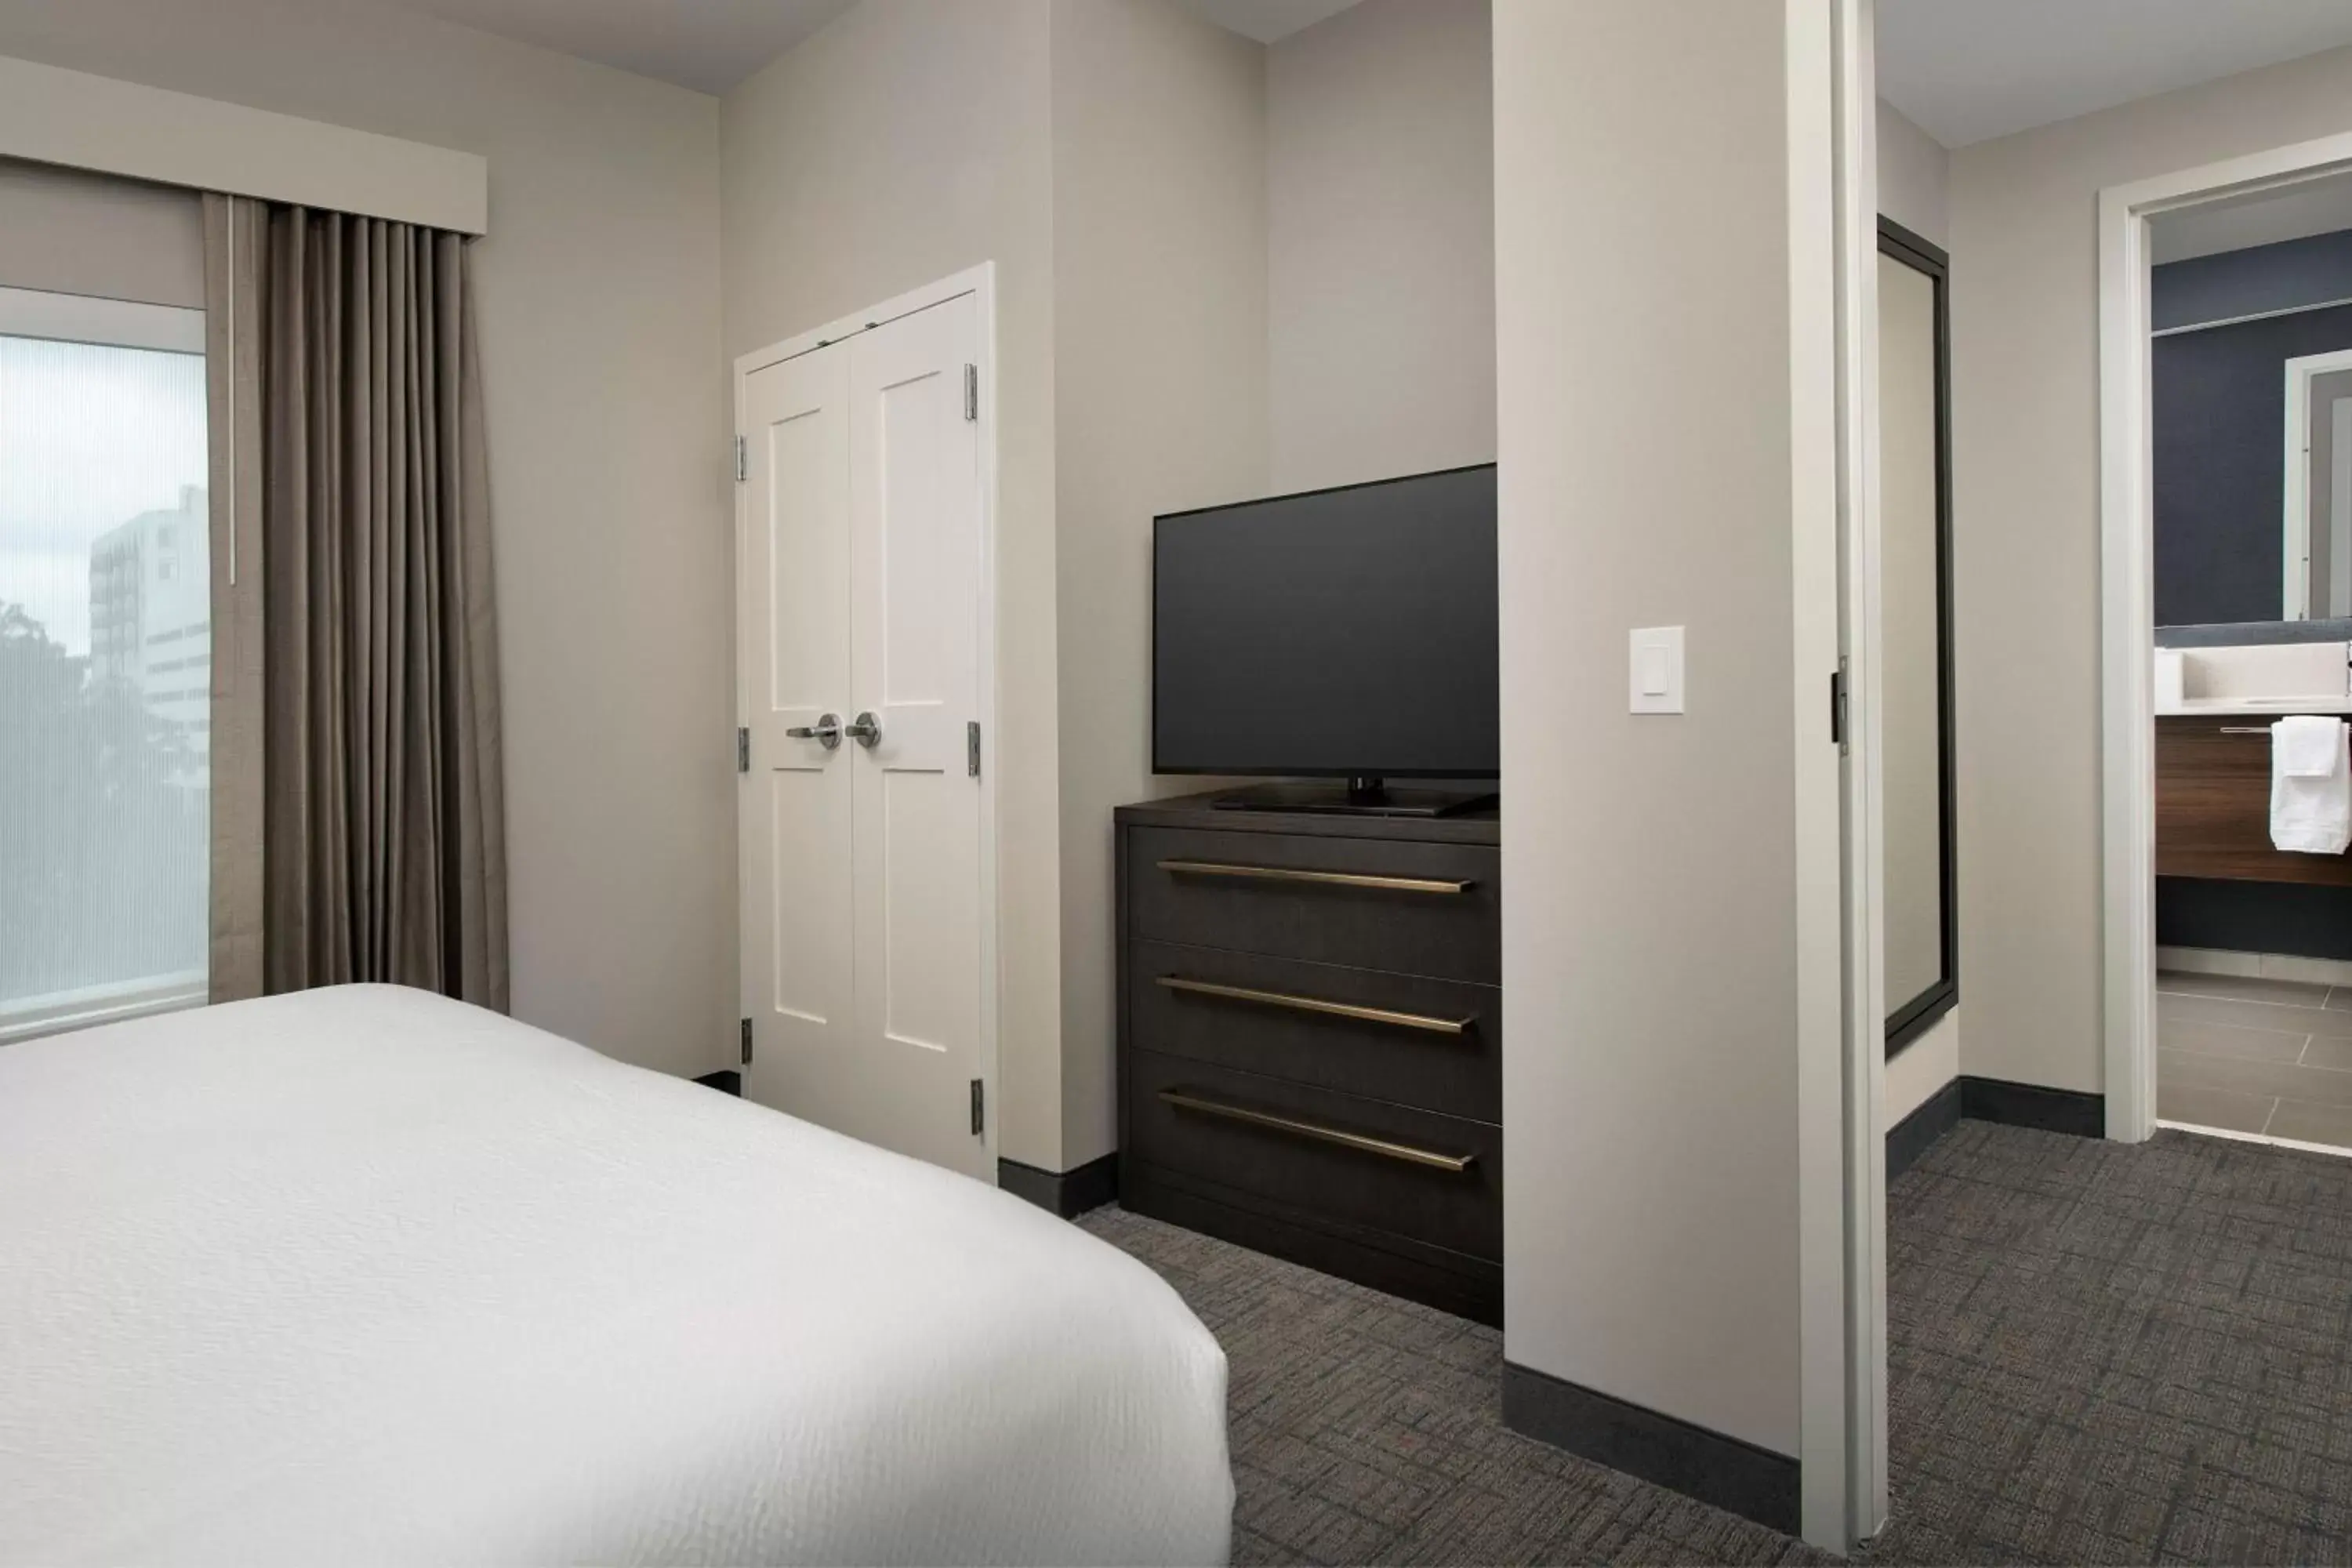 Bedroom, TV/Entertainment Center in Residence Inn by Marriott Jacksonville Downtown